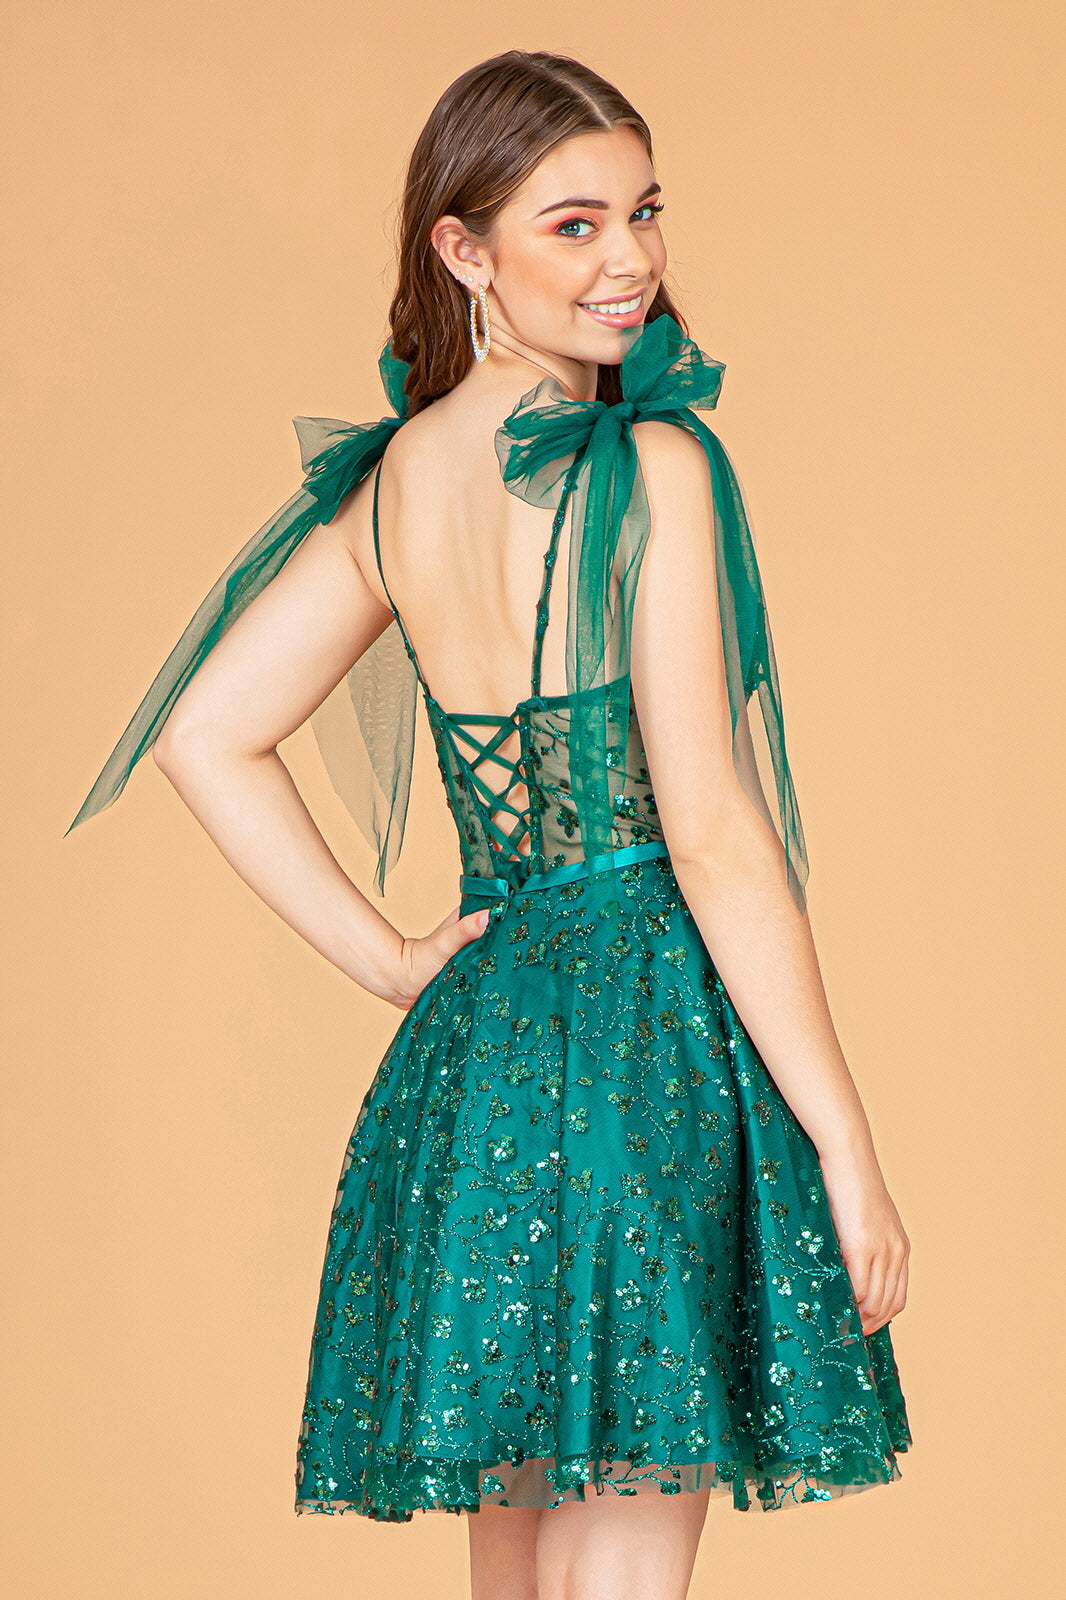 Short Glitter Print Dress by Elizabeth K GS3088